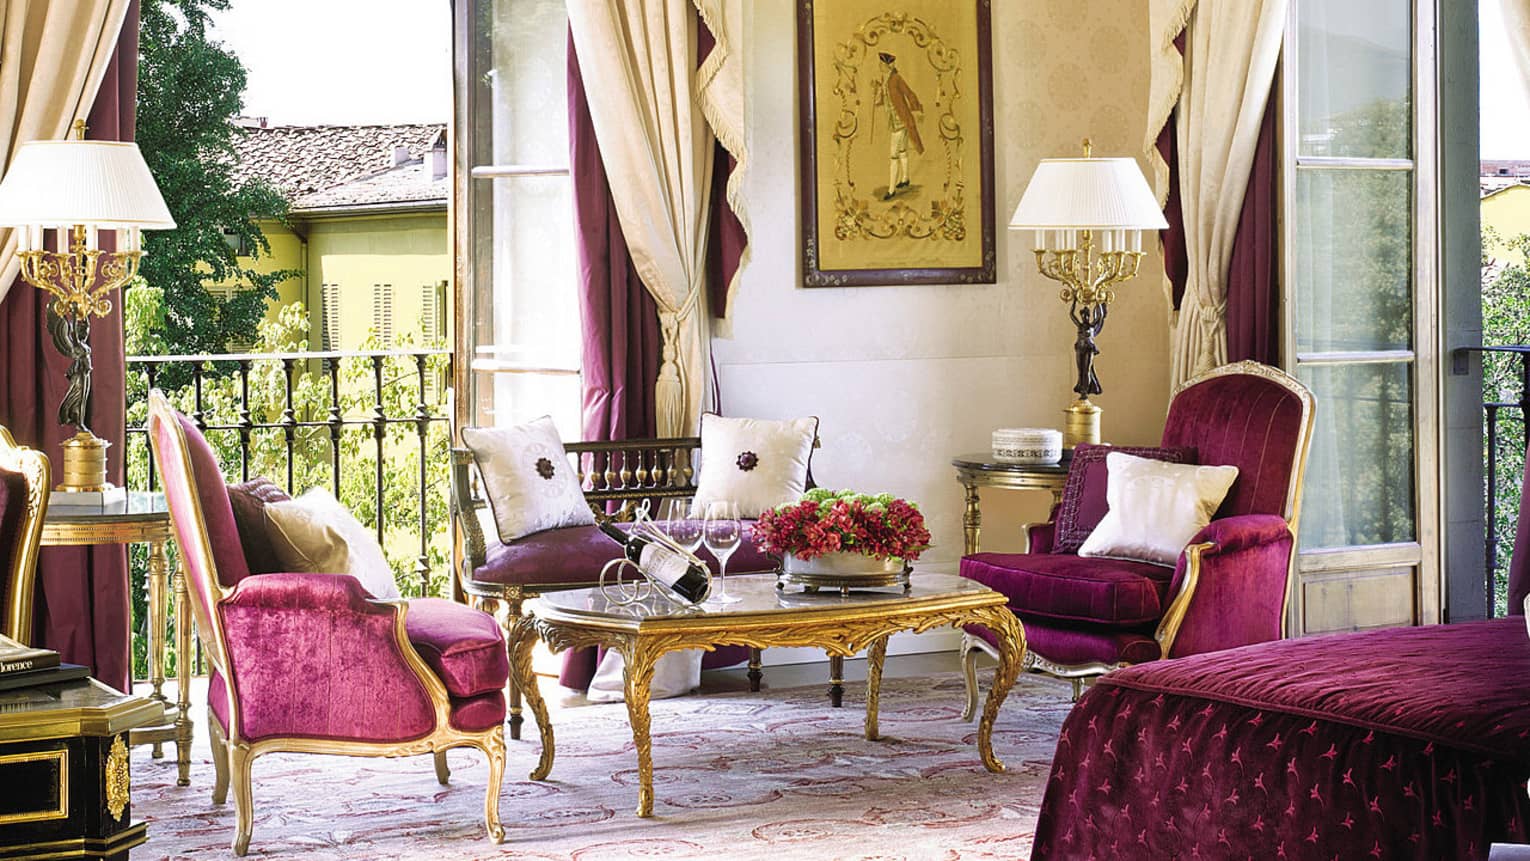 Presidential Suite De’ Medici purple velvet armchairs, loveseat, open balcony doors